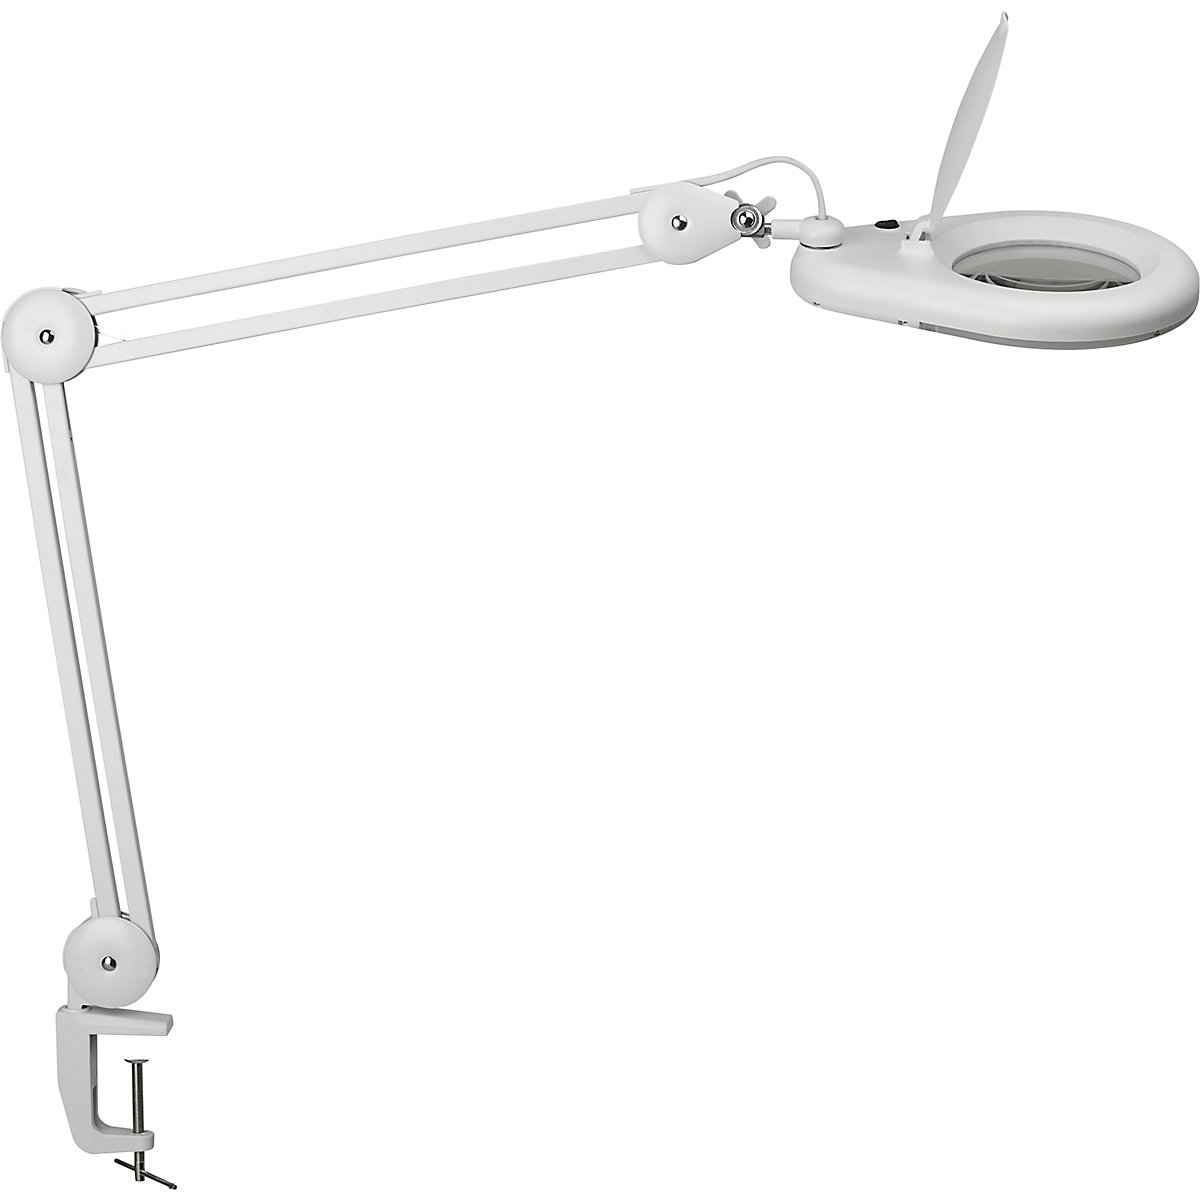 STAHLWERK Lampe de travail E27 douille 60 W Lampe d'atelier Lampe